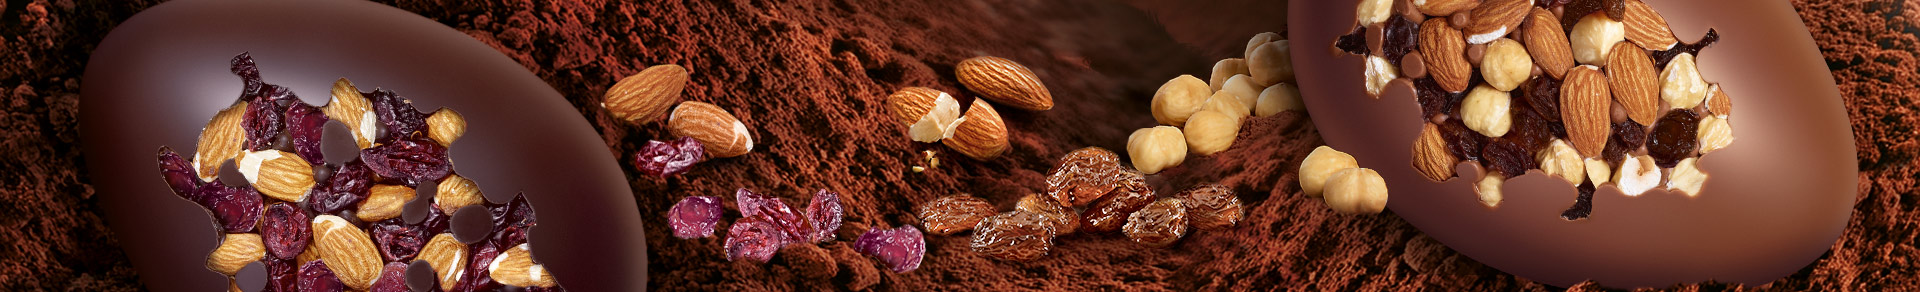 Uovo Perugina® Le Ricette Creative di cioccolato fondente con mirtilli rossi e mandorle